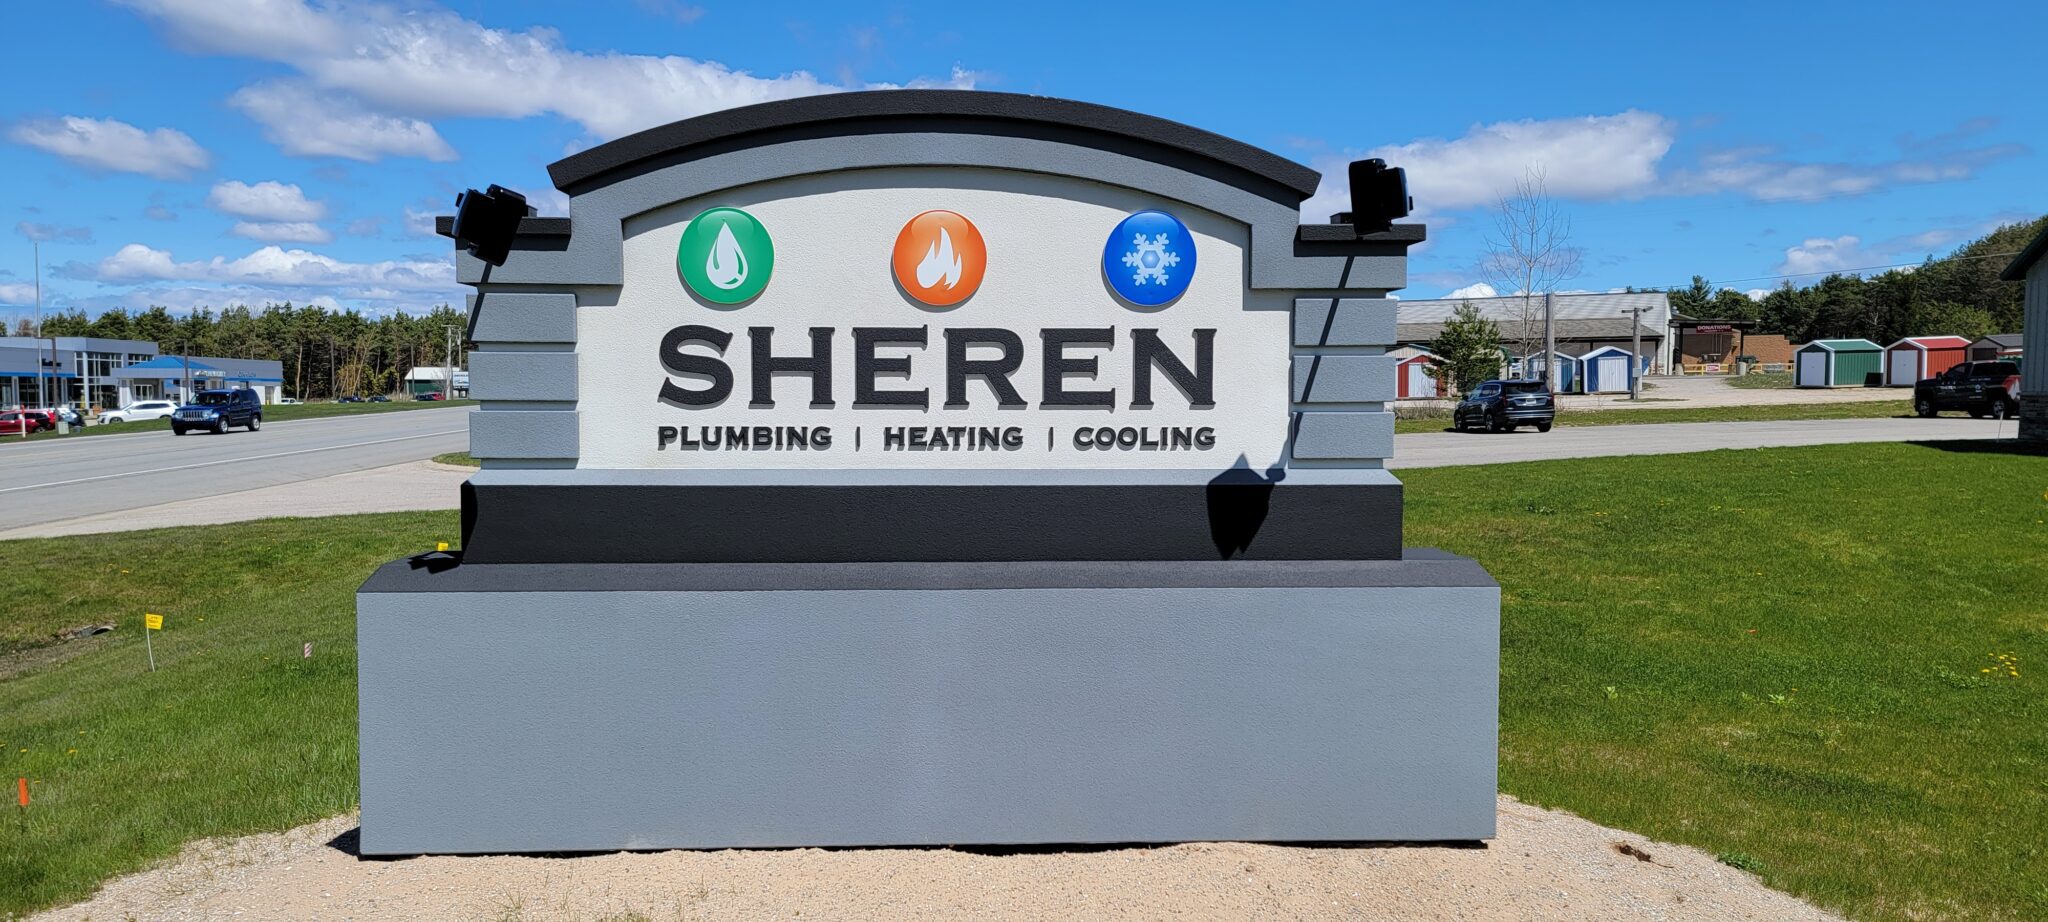 Sheren Plumbing, Heating & Cooling Petoskey Location